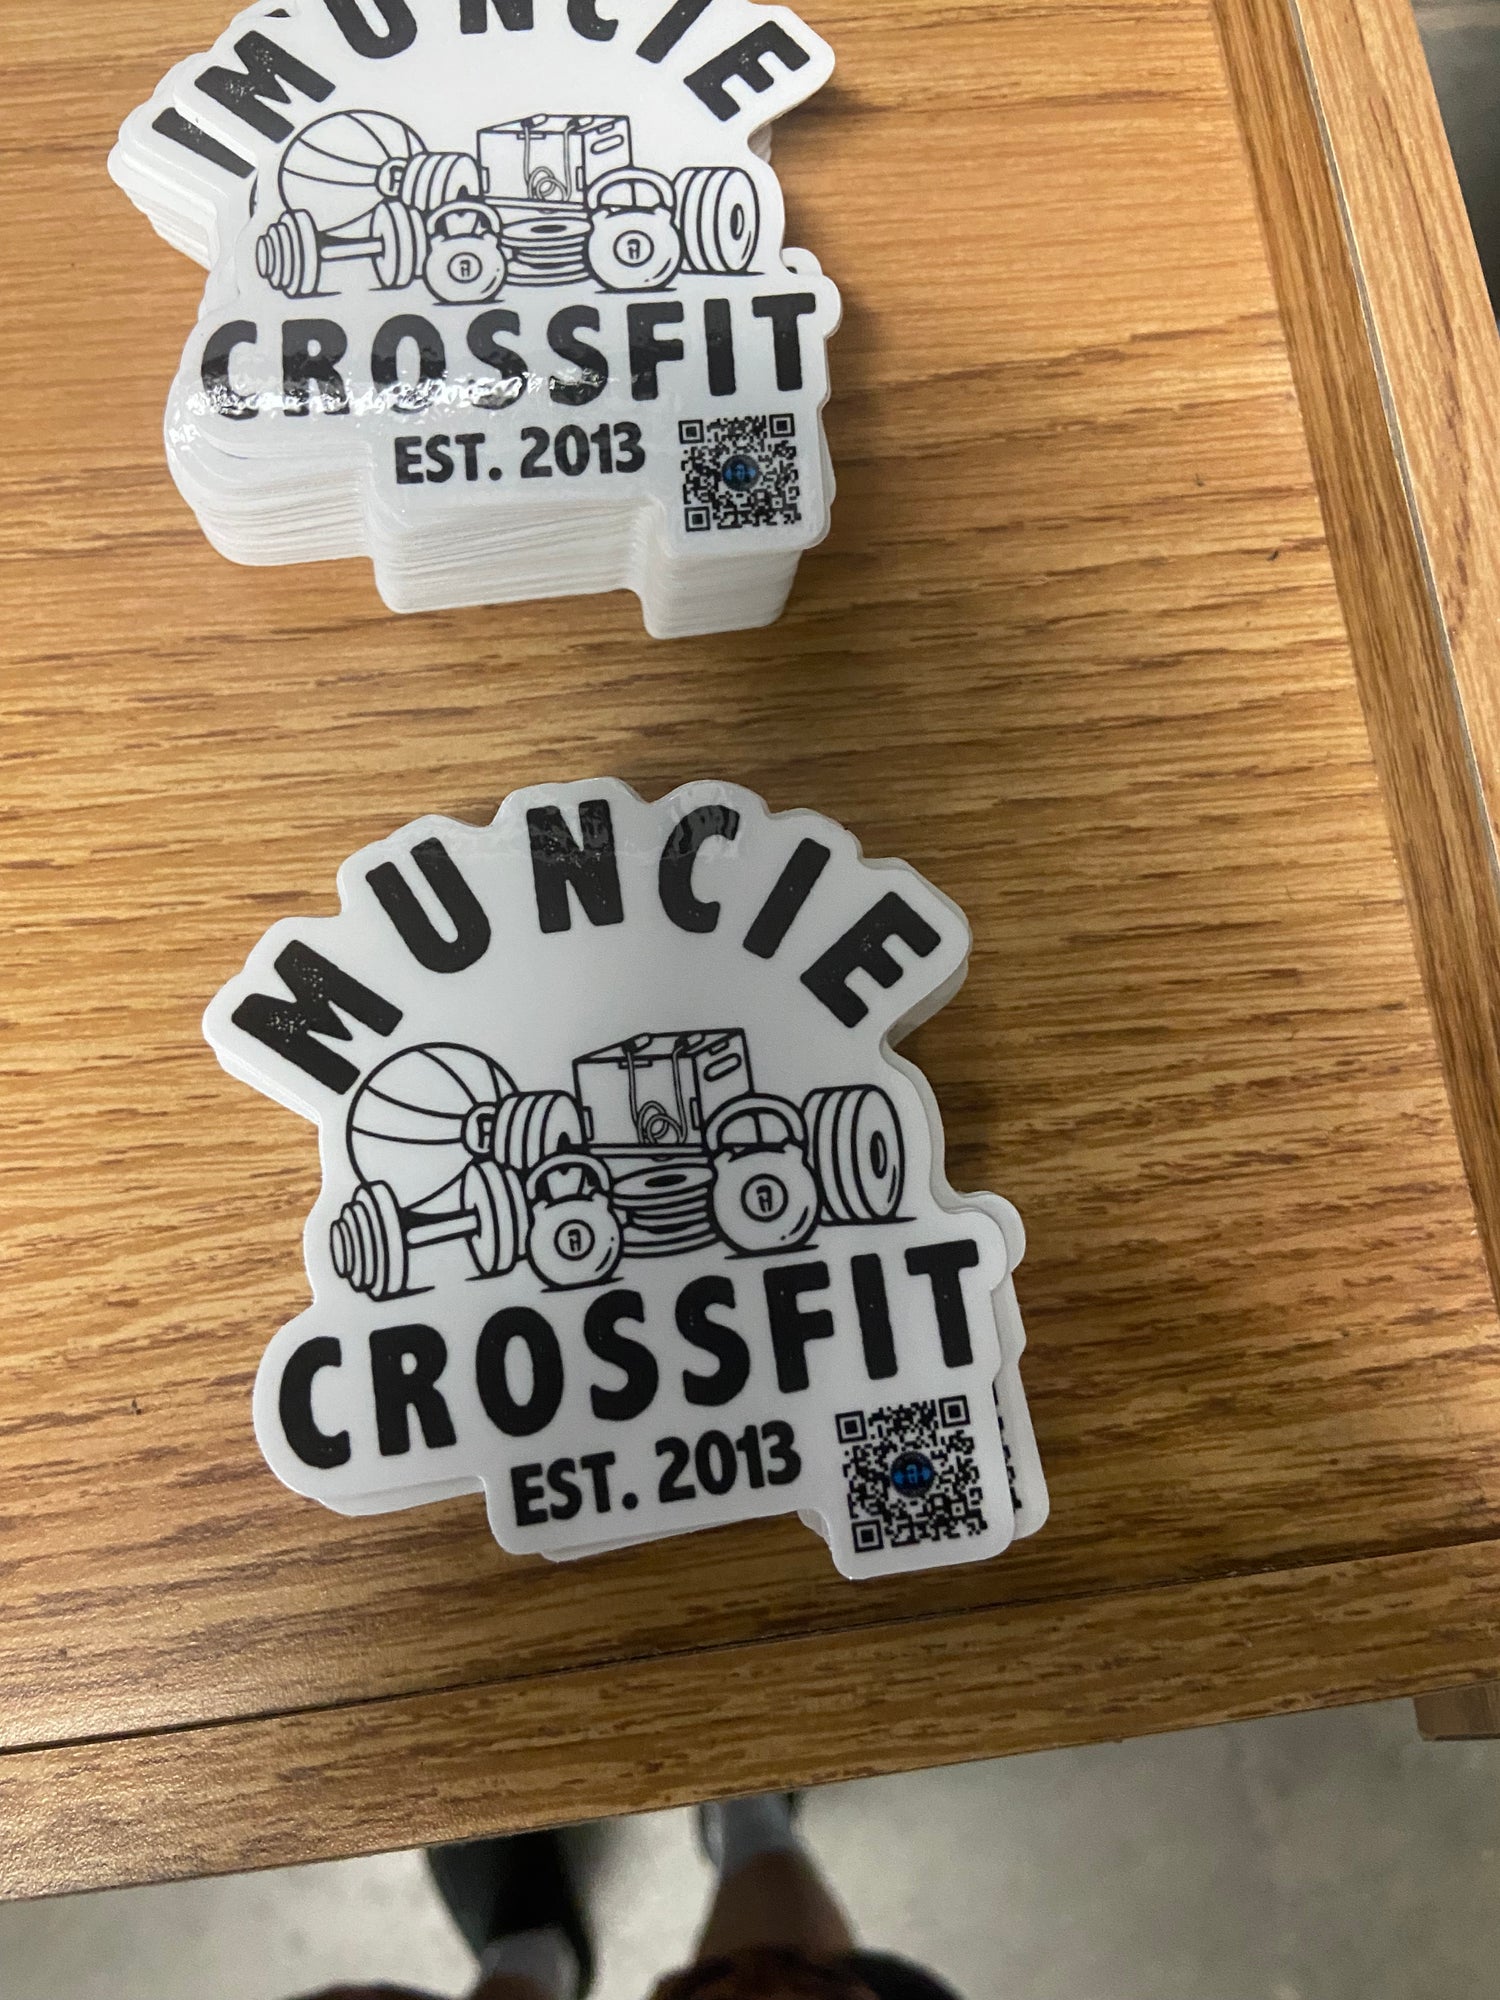 Muncie CrossFit